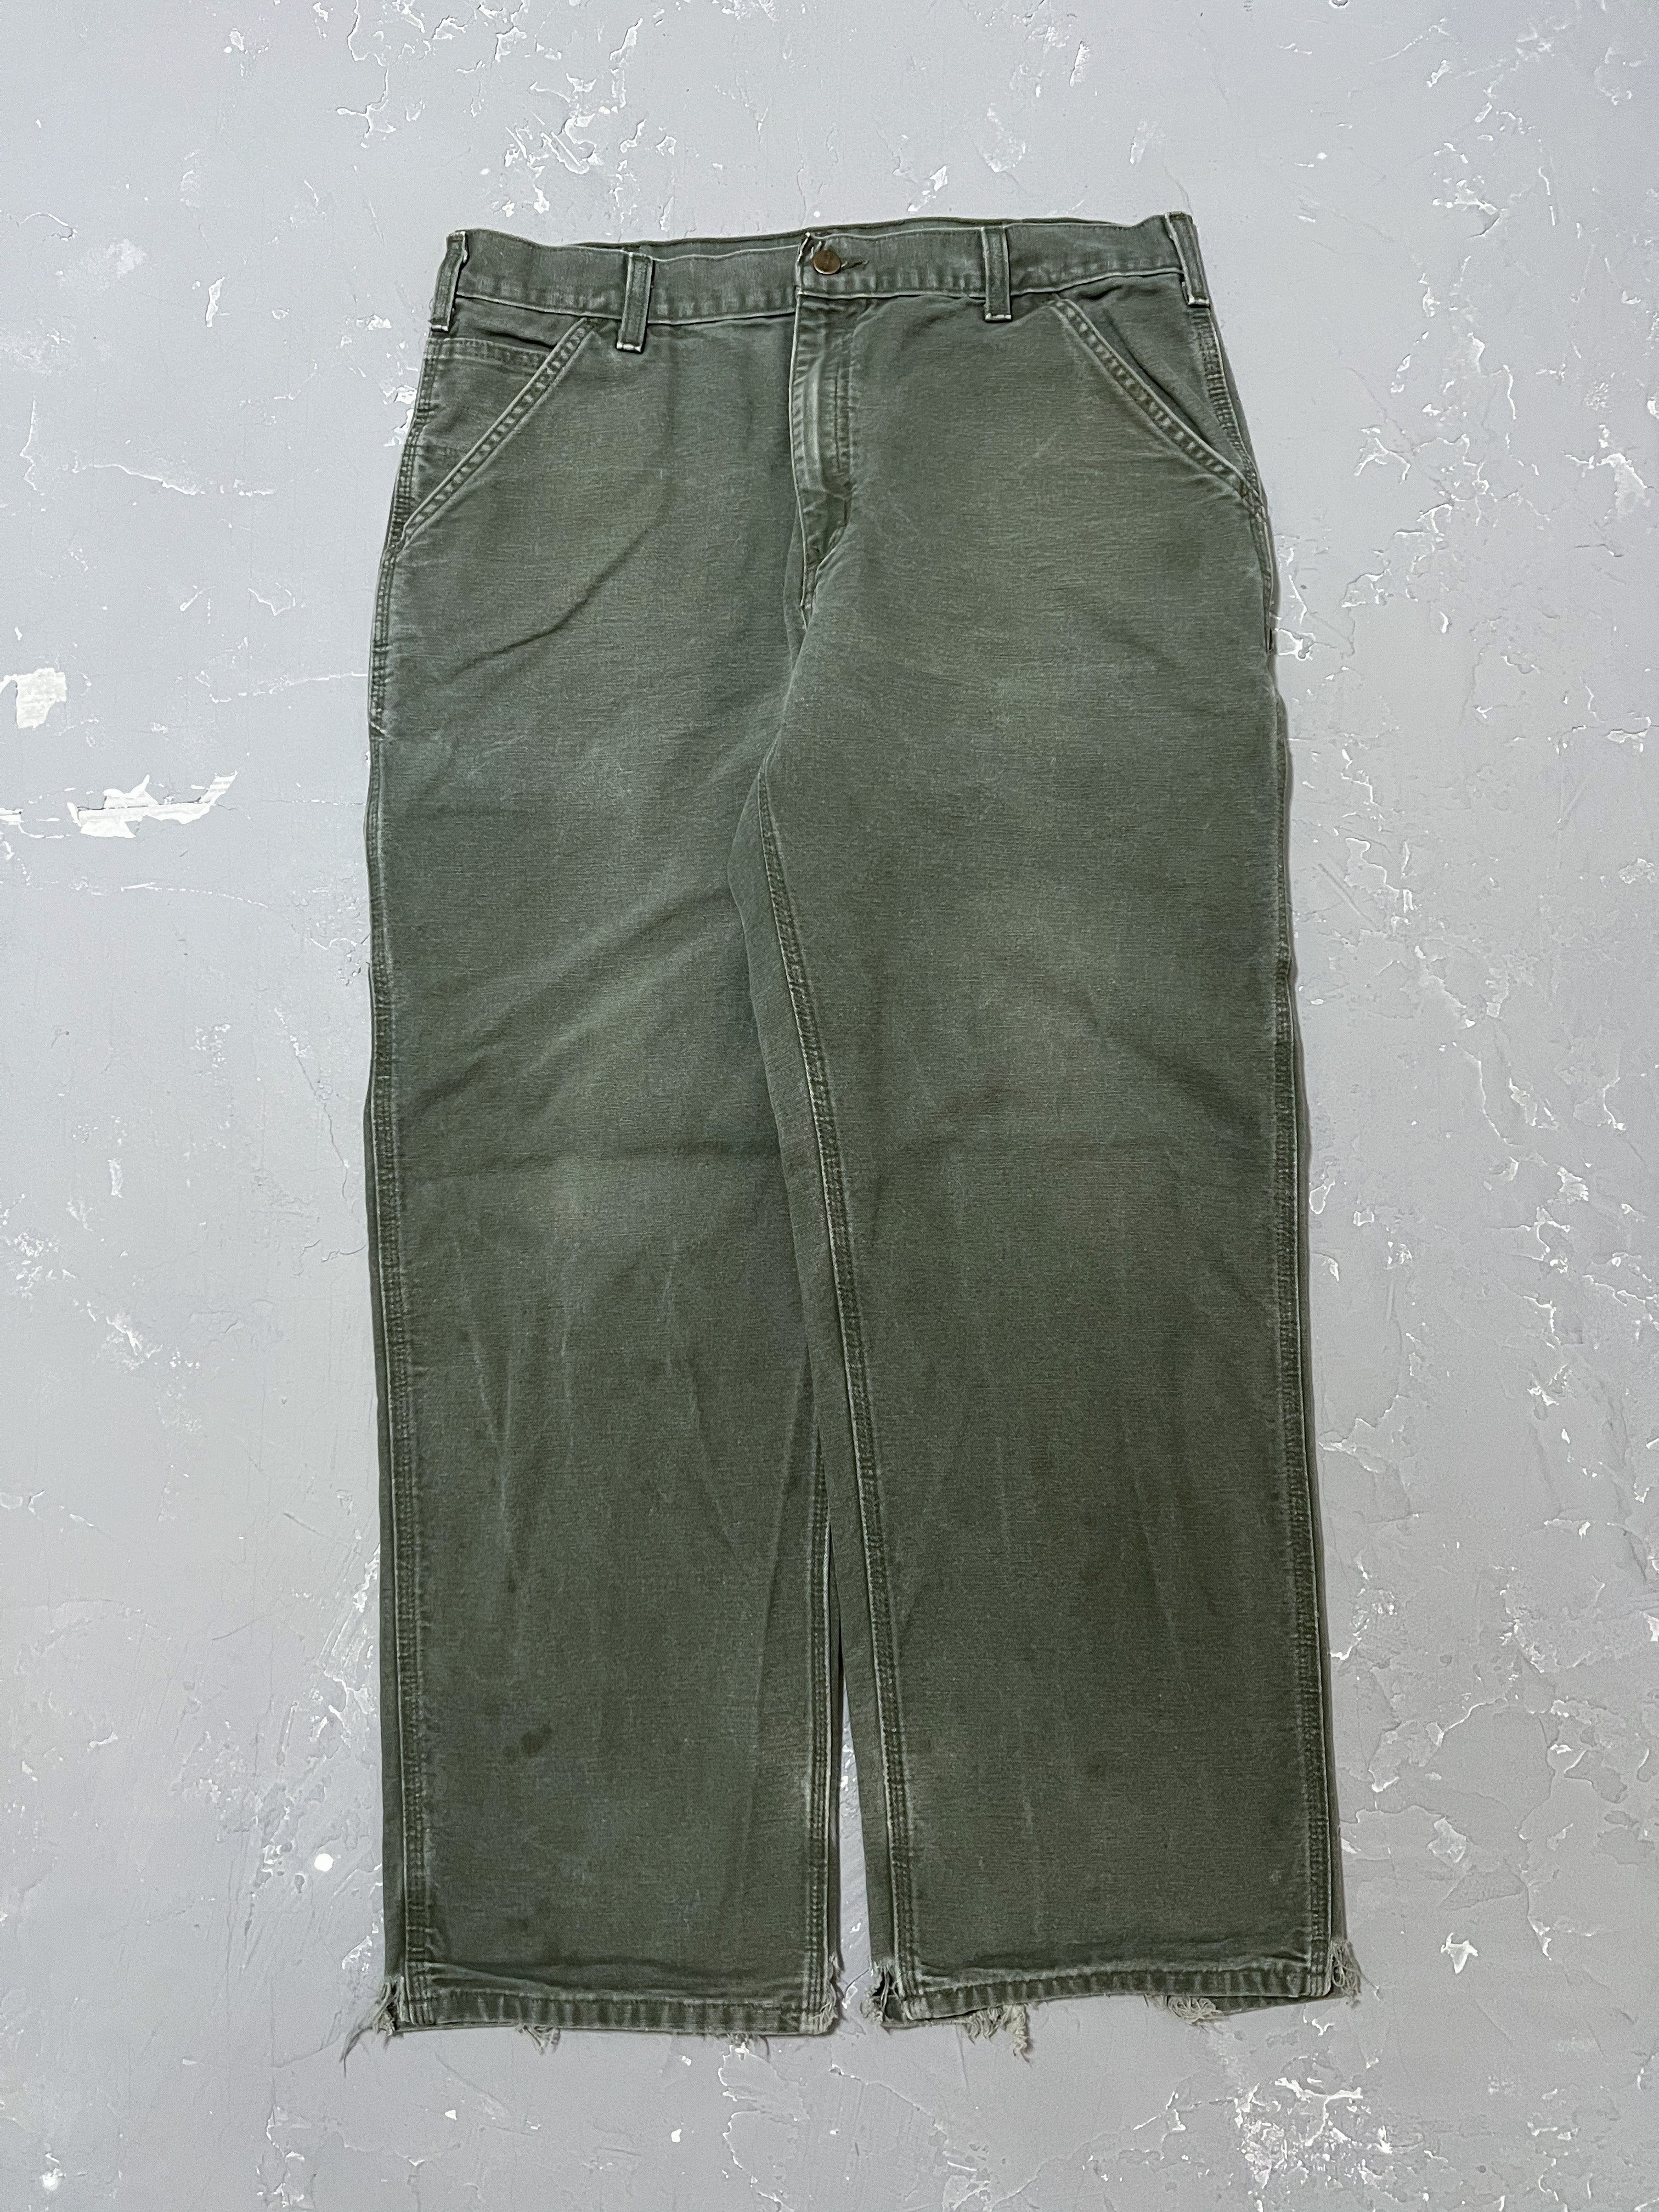 Carhartt Faded Moss Green Carpenter Pants [36 x 30]